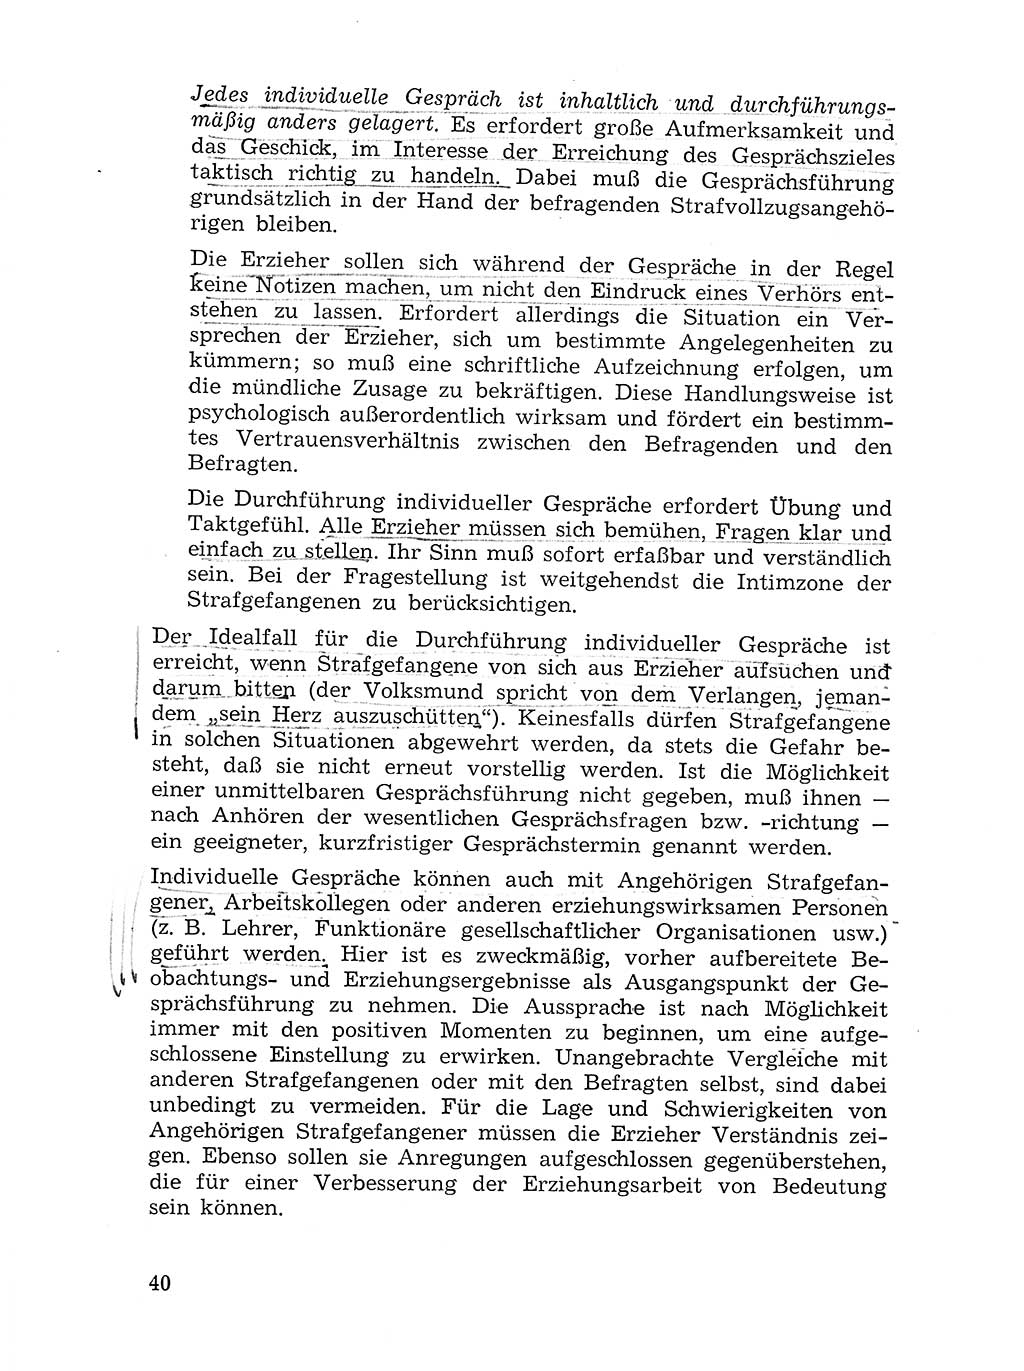 Sozialistischer Strafvollzug (SV) [Deutsche Demokratische Republik (DDR)] 1972, Seite 40 (Soz. SV DDR 1972, S. 40)